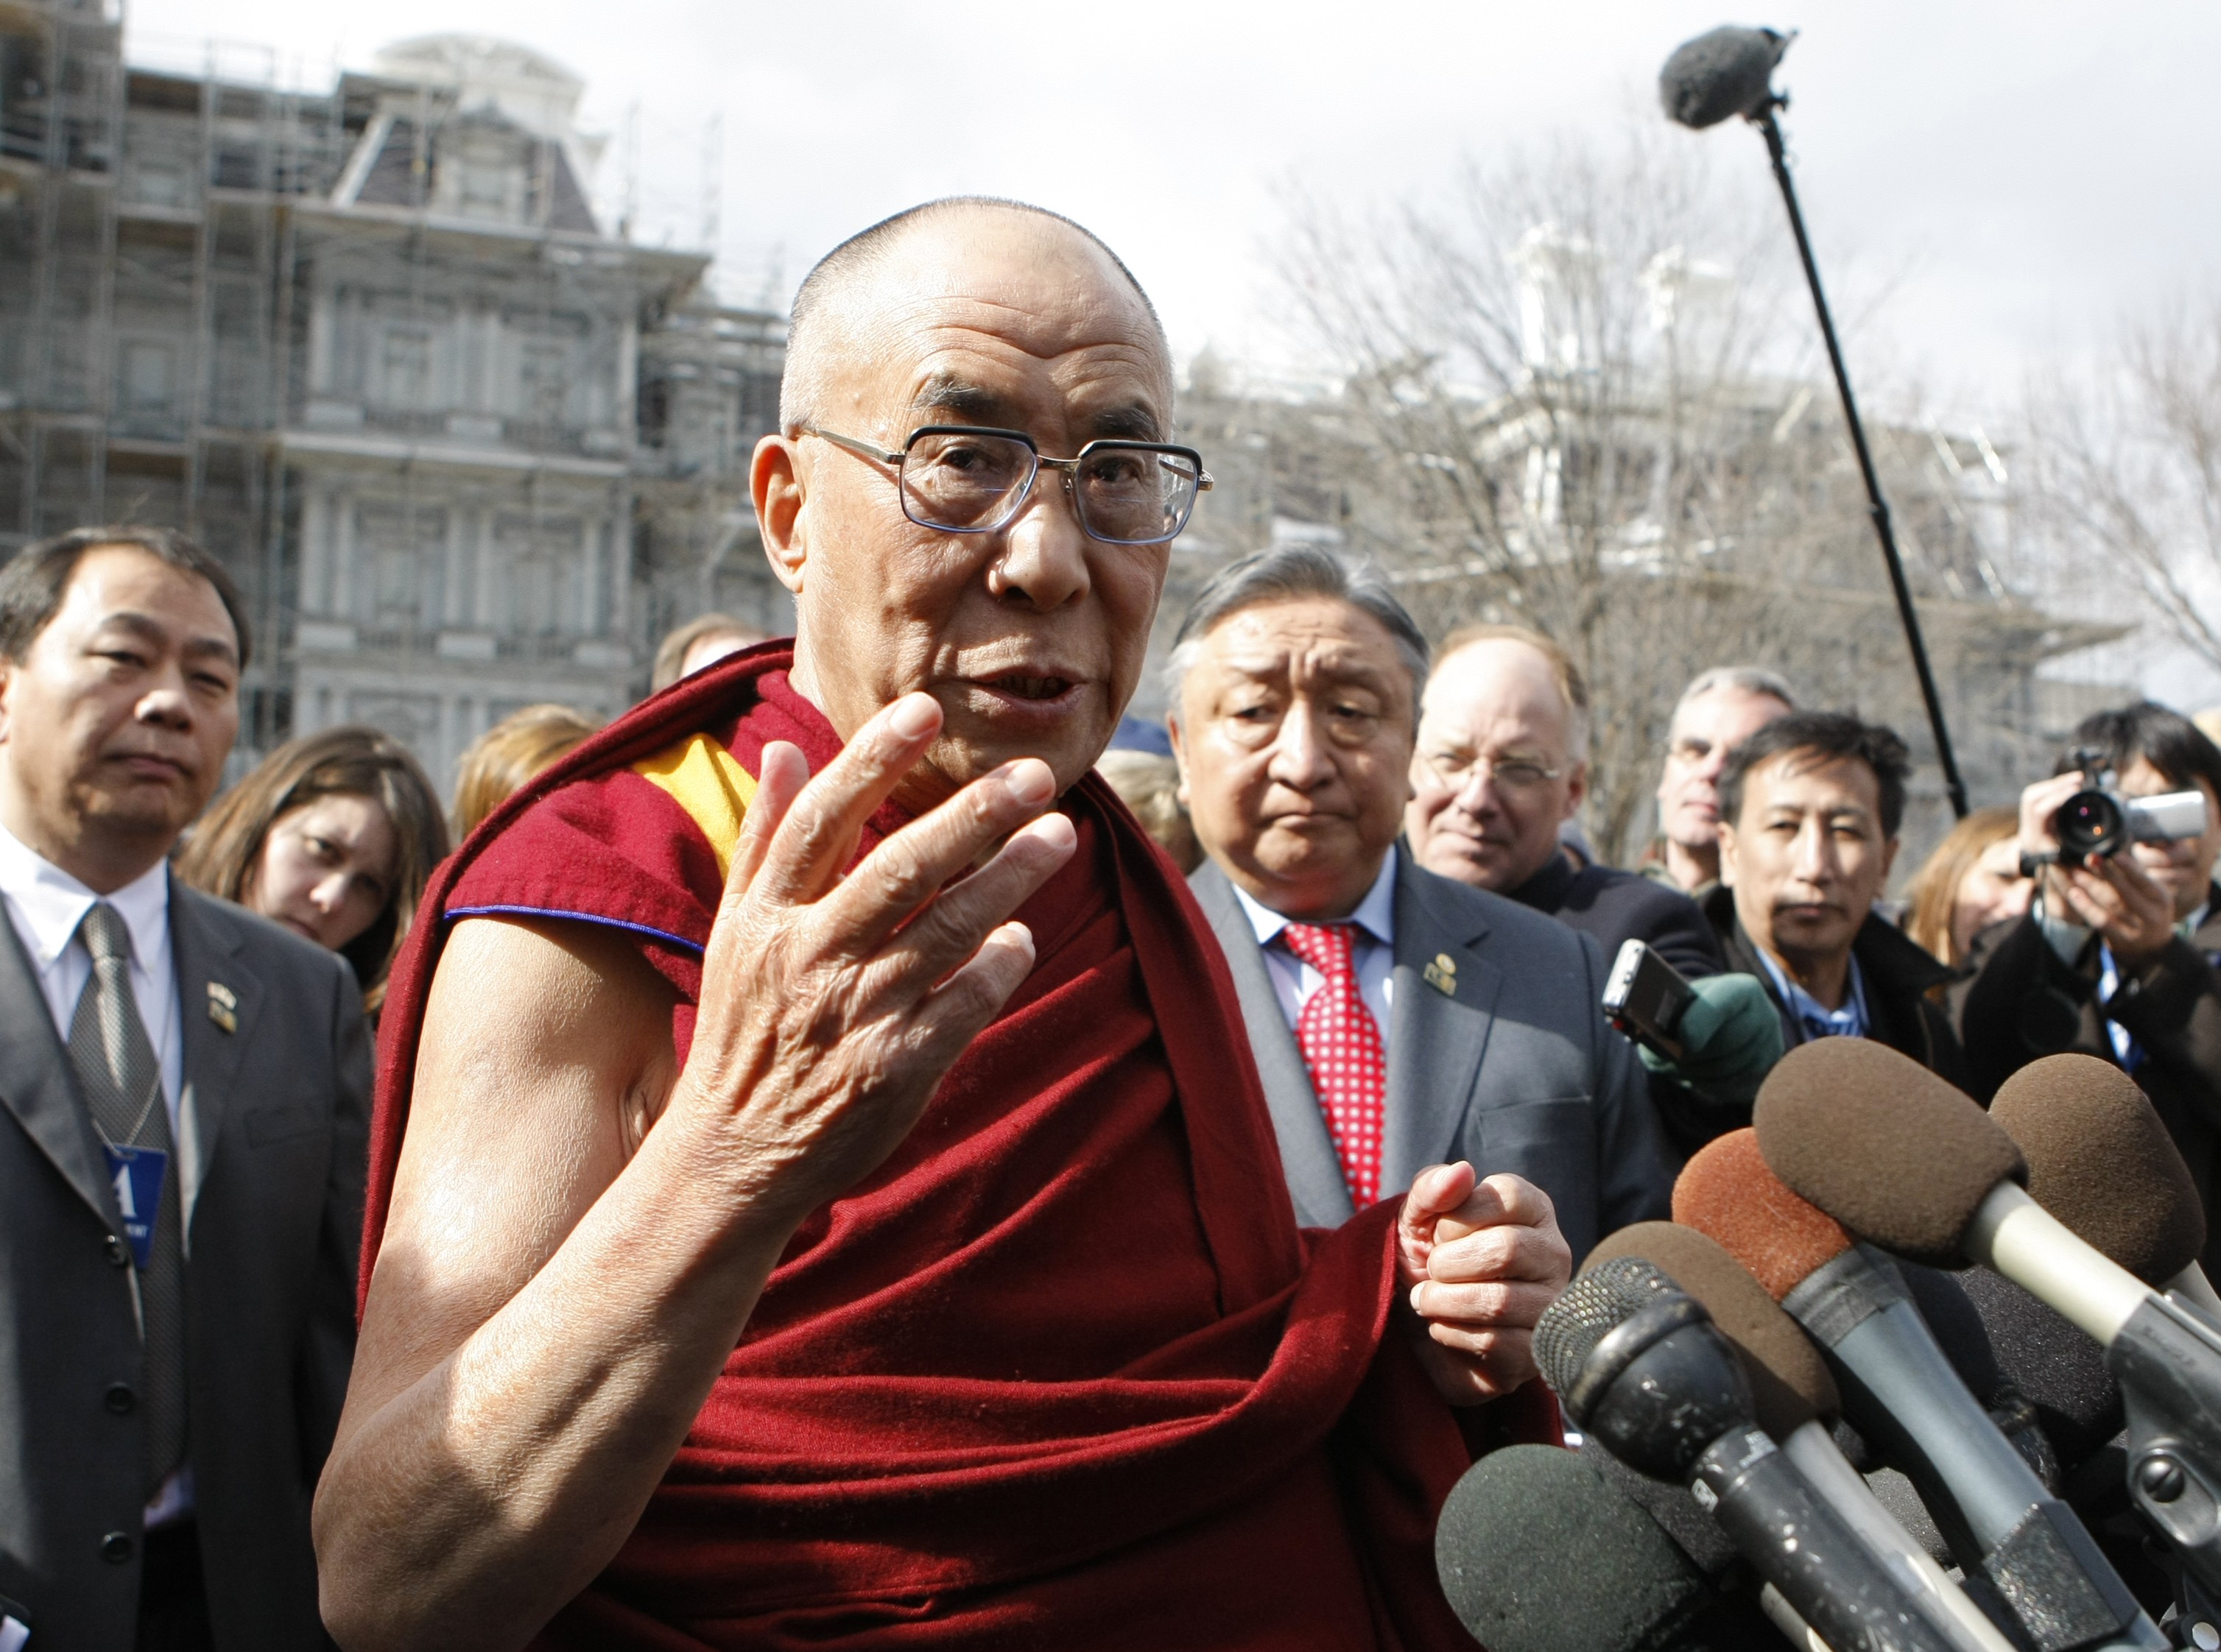 Hot, Dalai Lama, Anklagelser, Brott och straff, Gift, Kina, mord